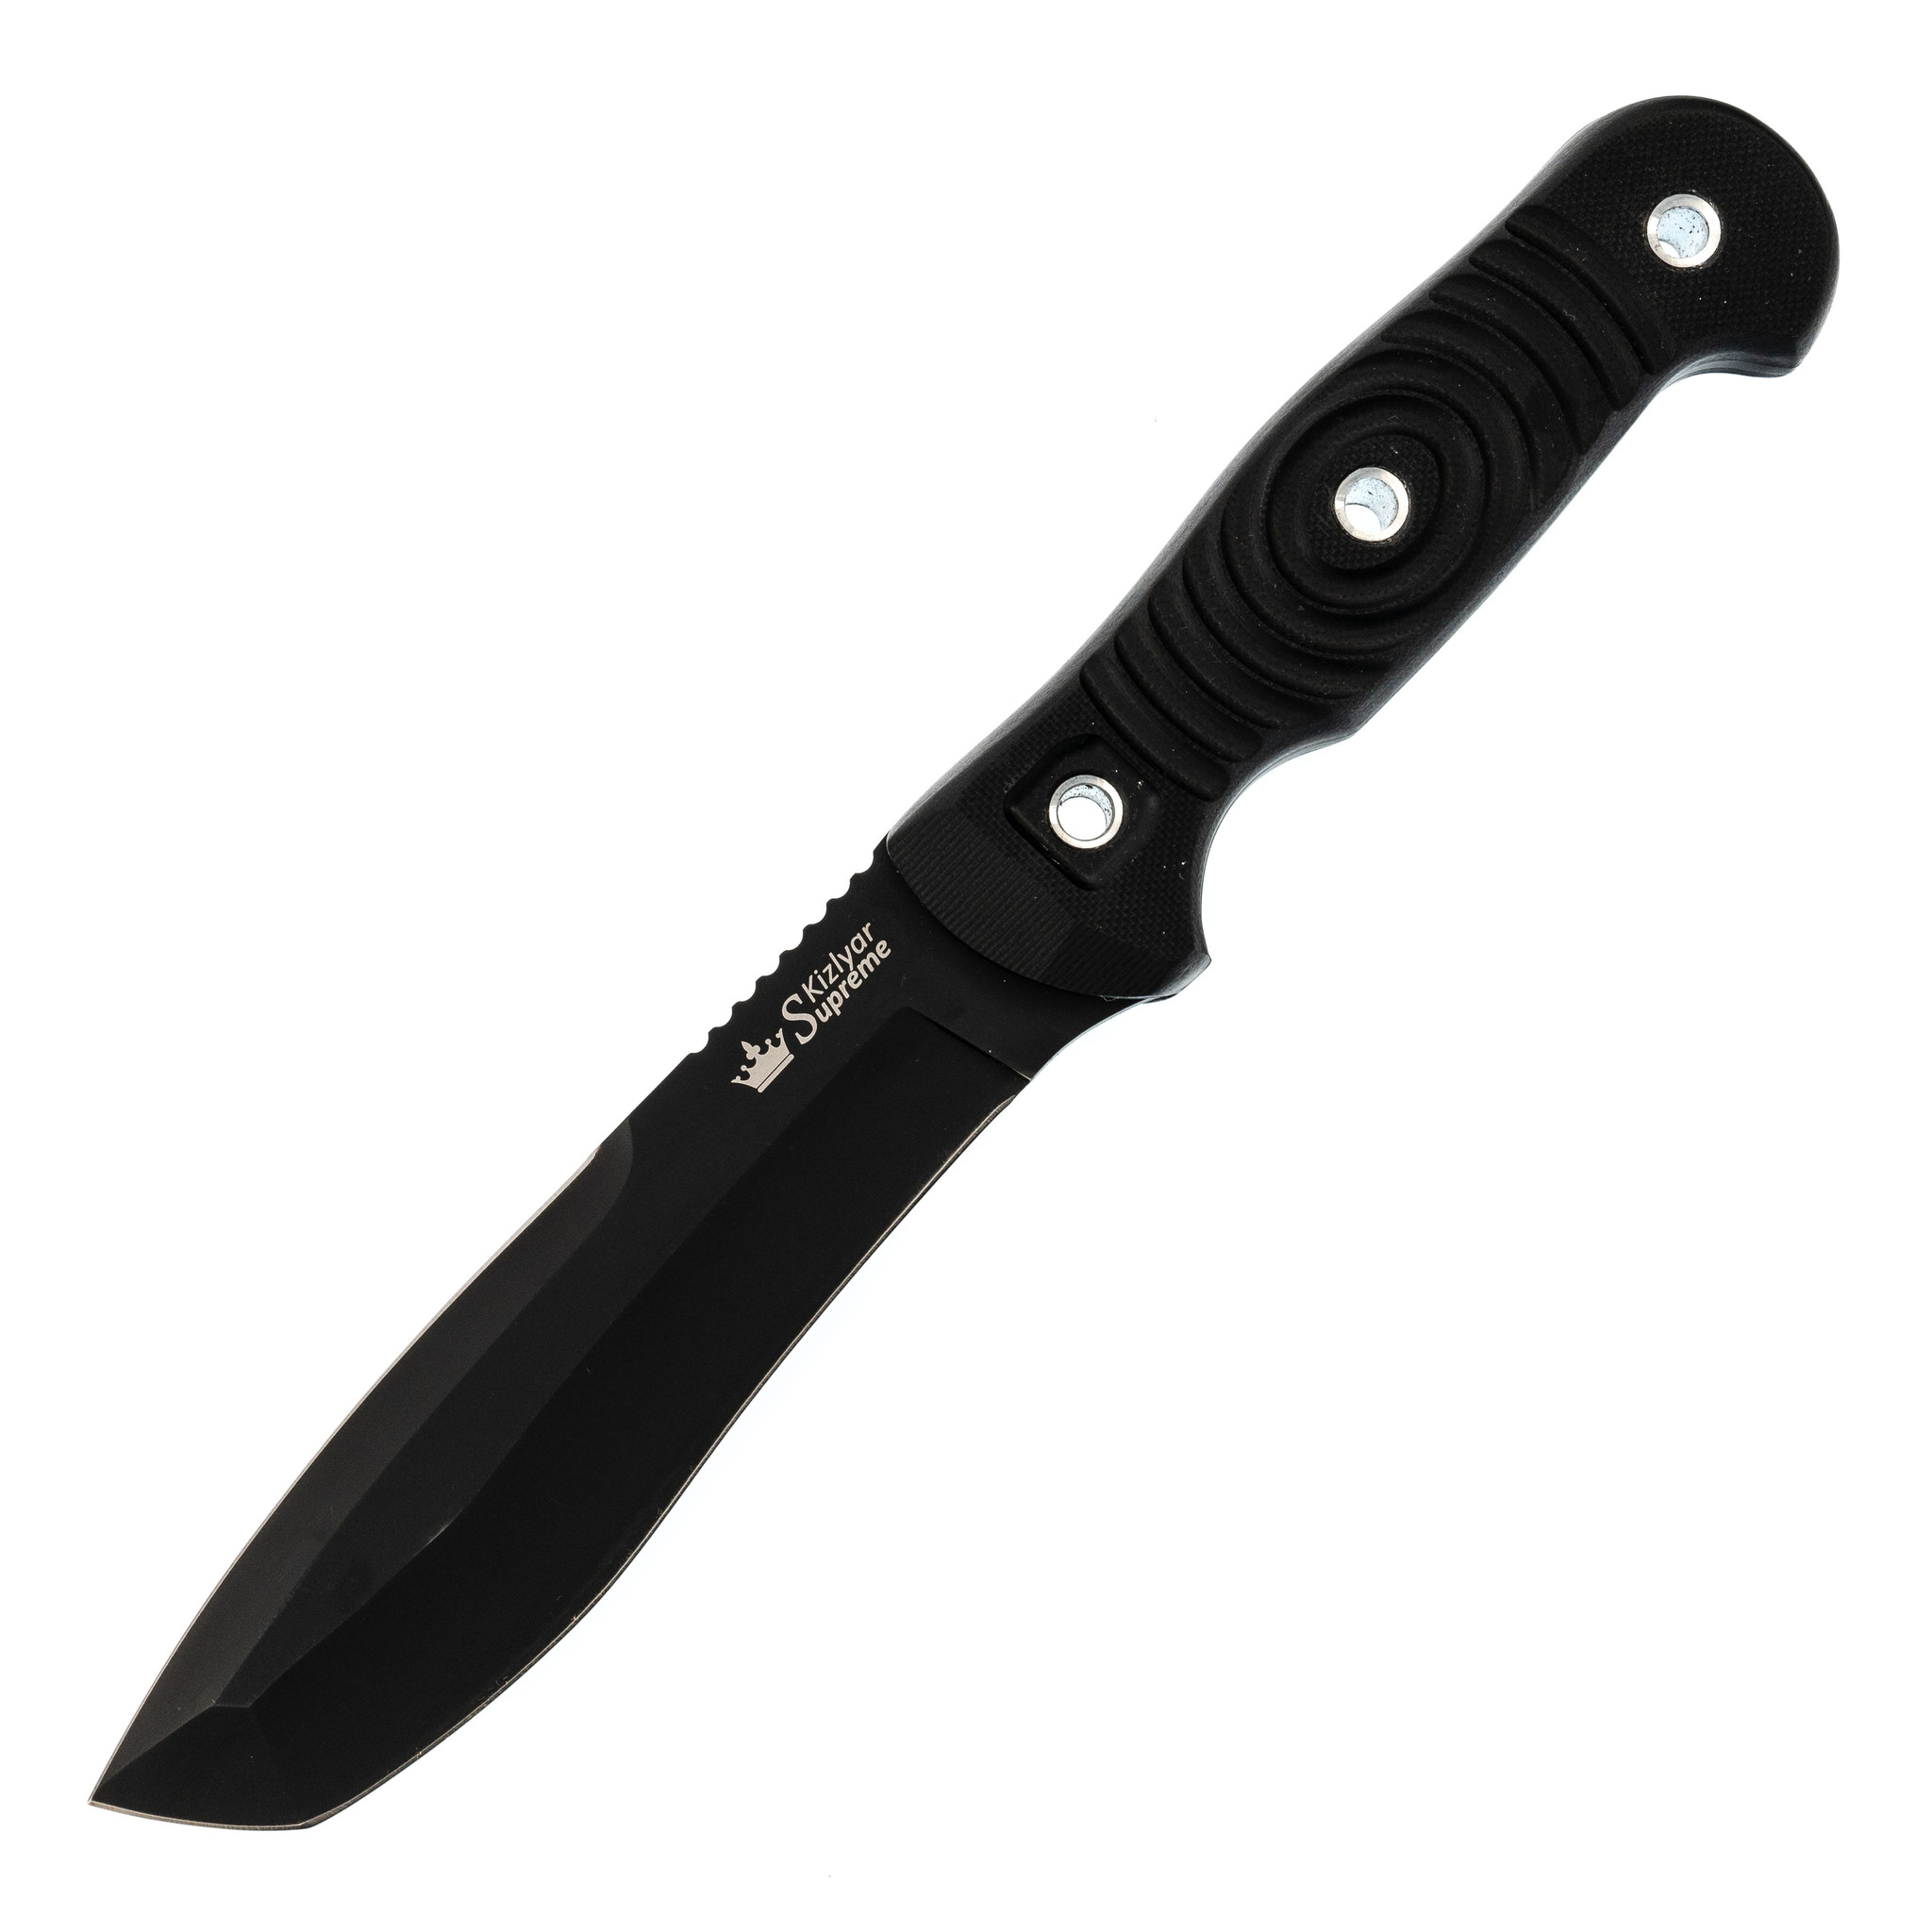 Нож Vendetta AUS-8 BT, G10, Kizlyar Supreme ножницы филировочные с упором лезвие 7 см салатовый серебристый